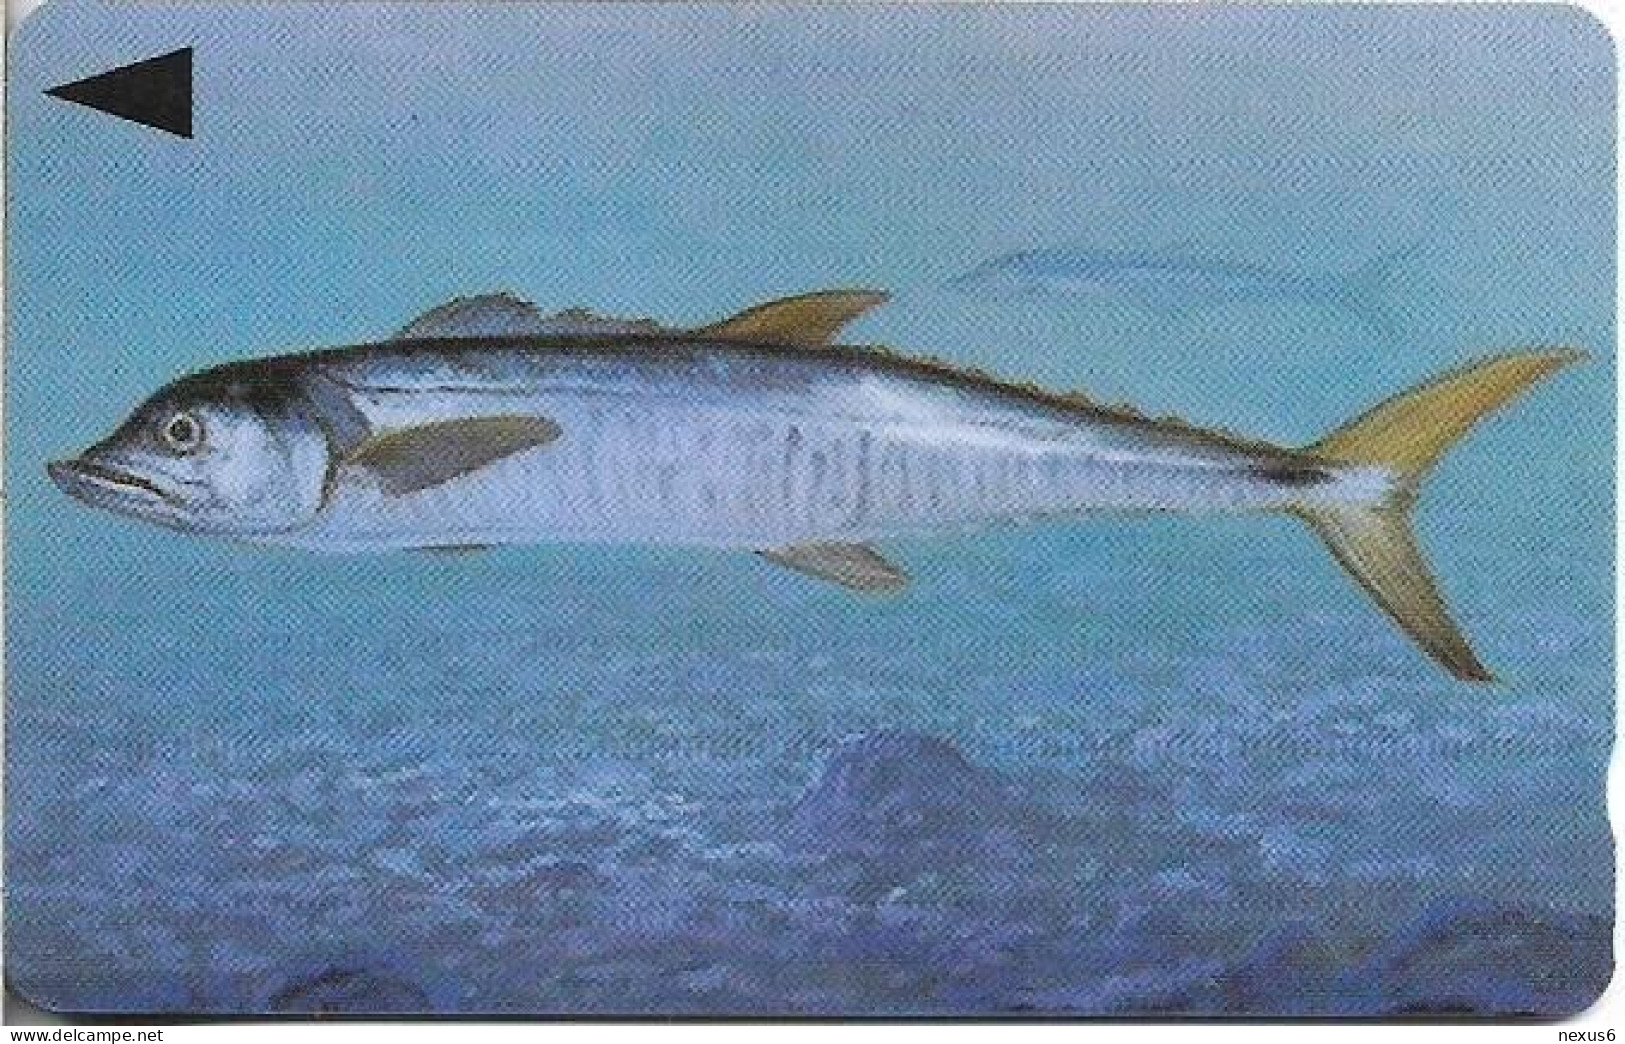 Bahrain - Batelco (GPT) - Fish Of Bahrain - Spanish Mackerel - 39BAHR (Normal 0, Small Cn.), 1996, 50Units, Used - Bahrain